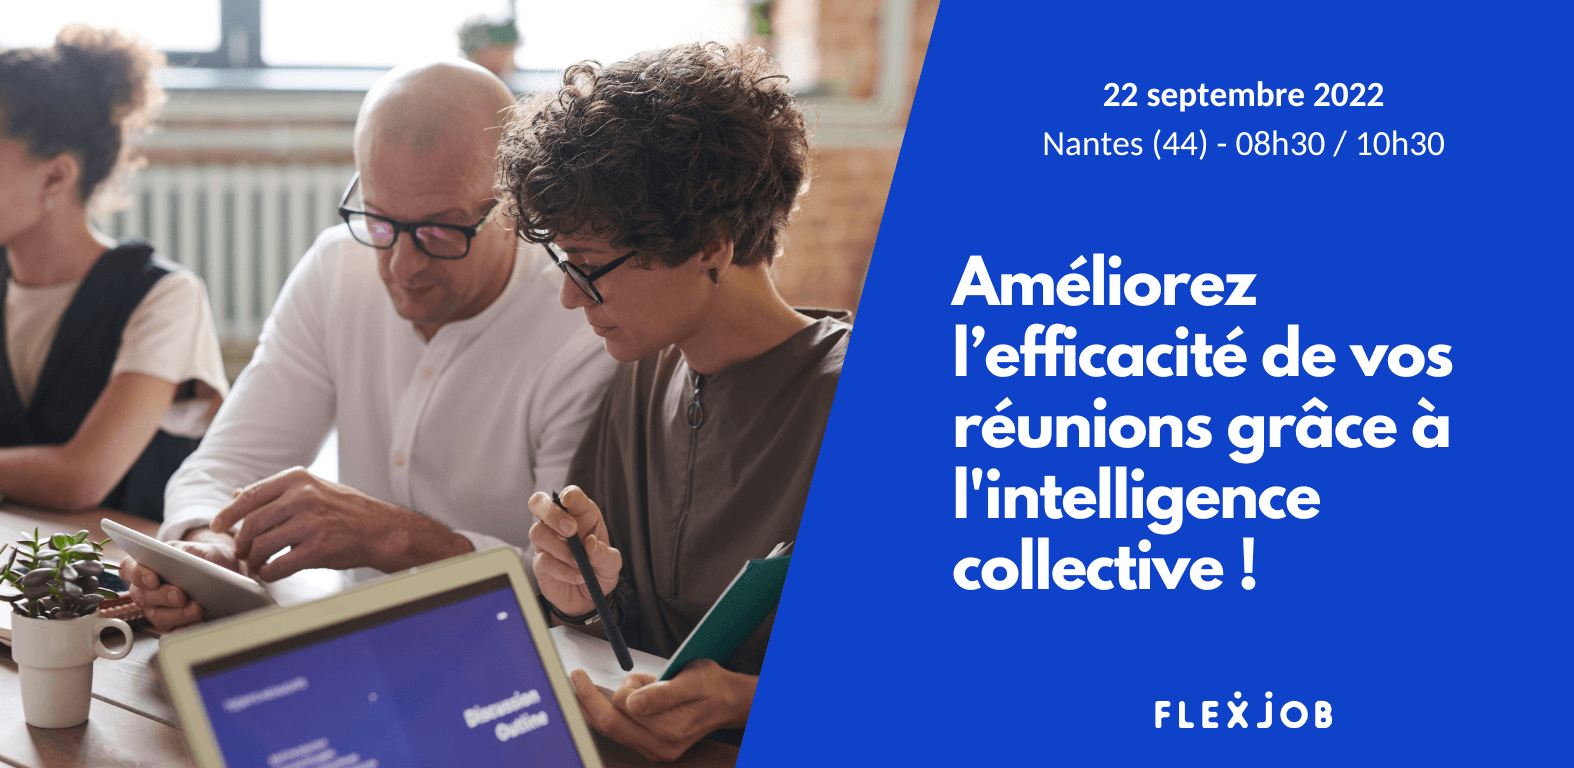 Retrouvez-nous pour notre prochain événement : reunions et intelligence collective à Nantes